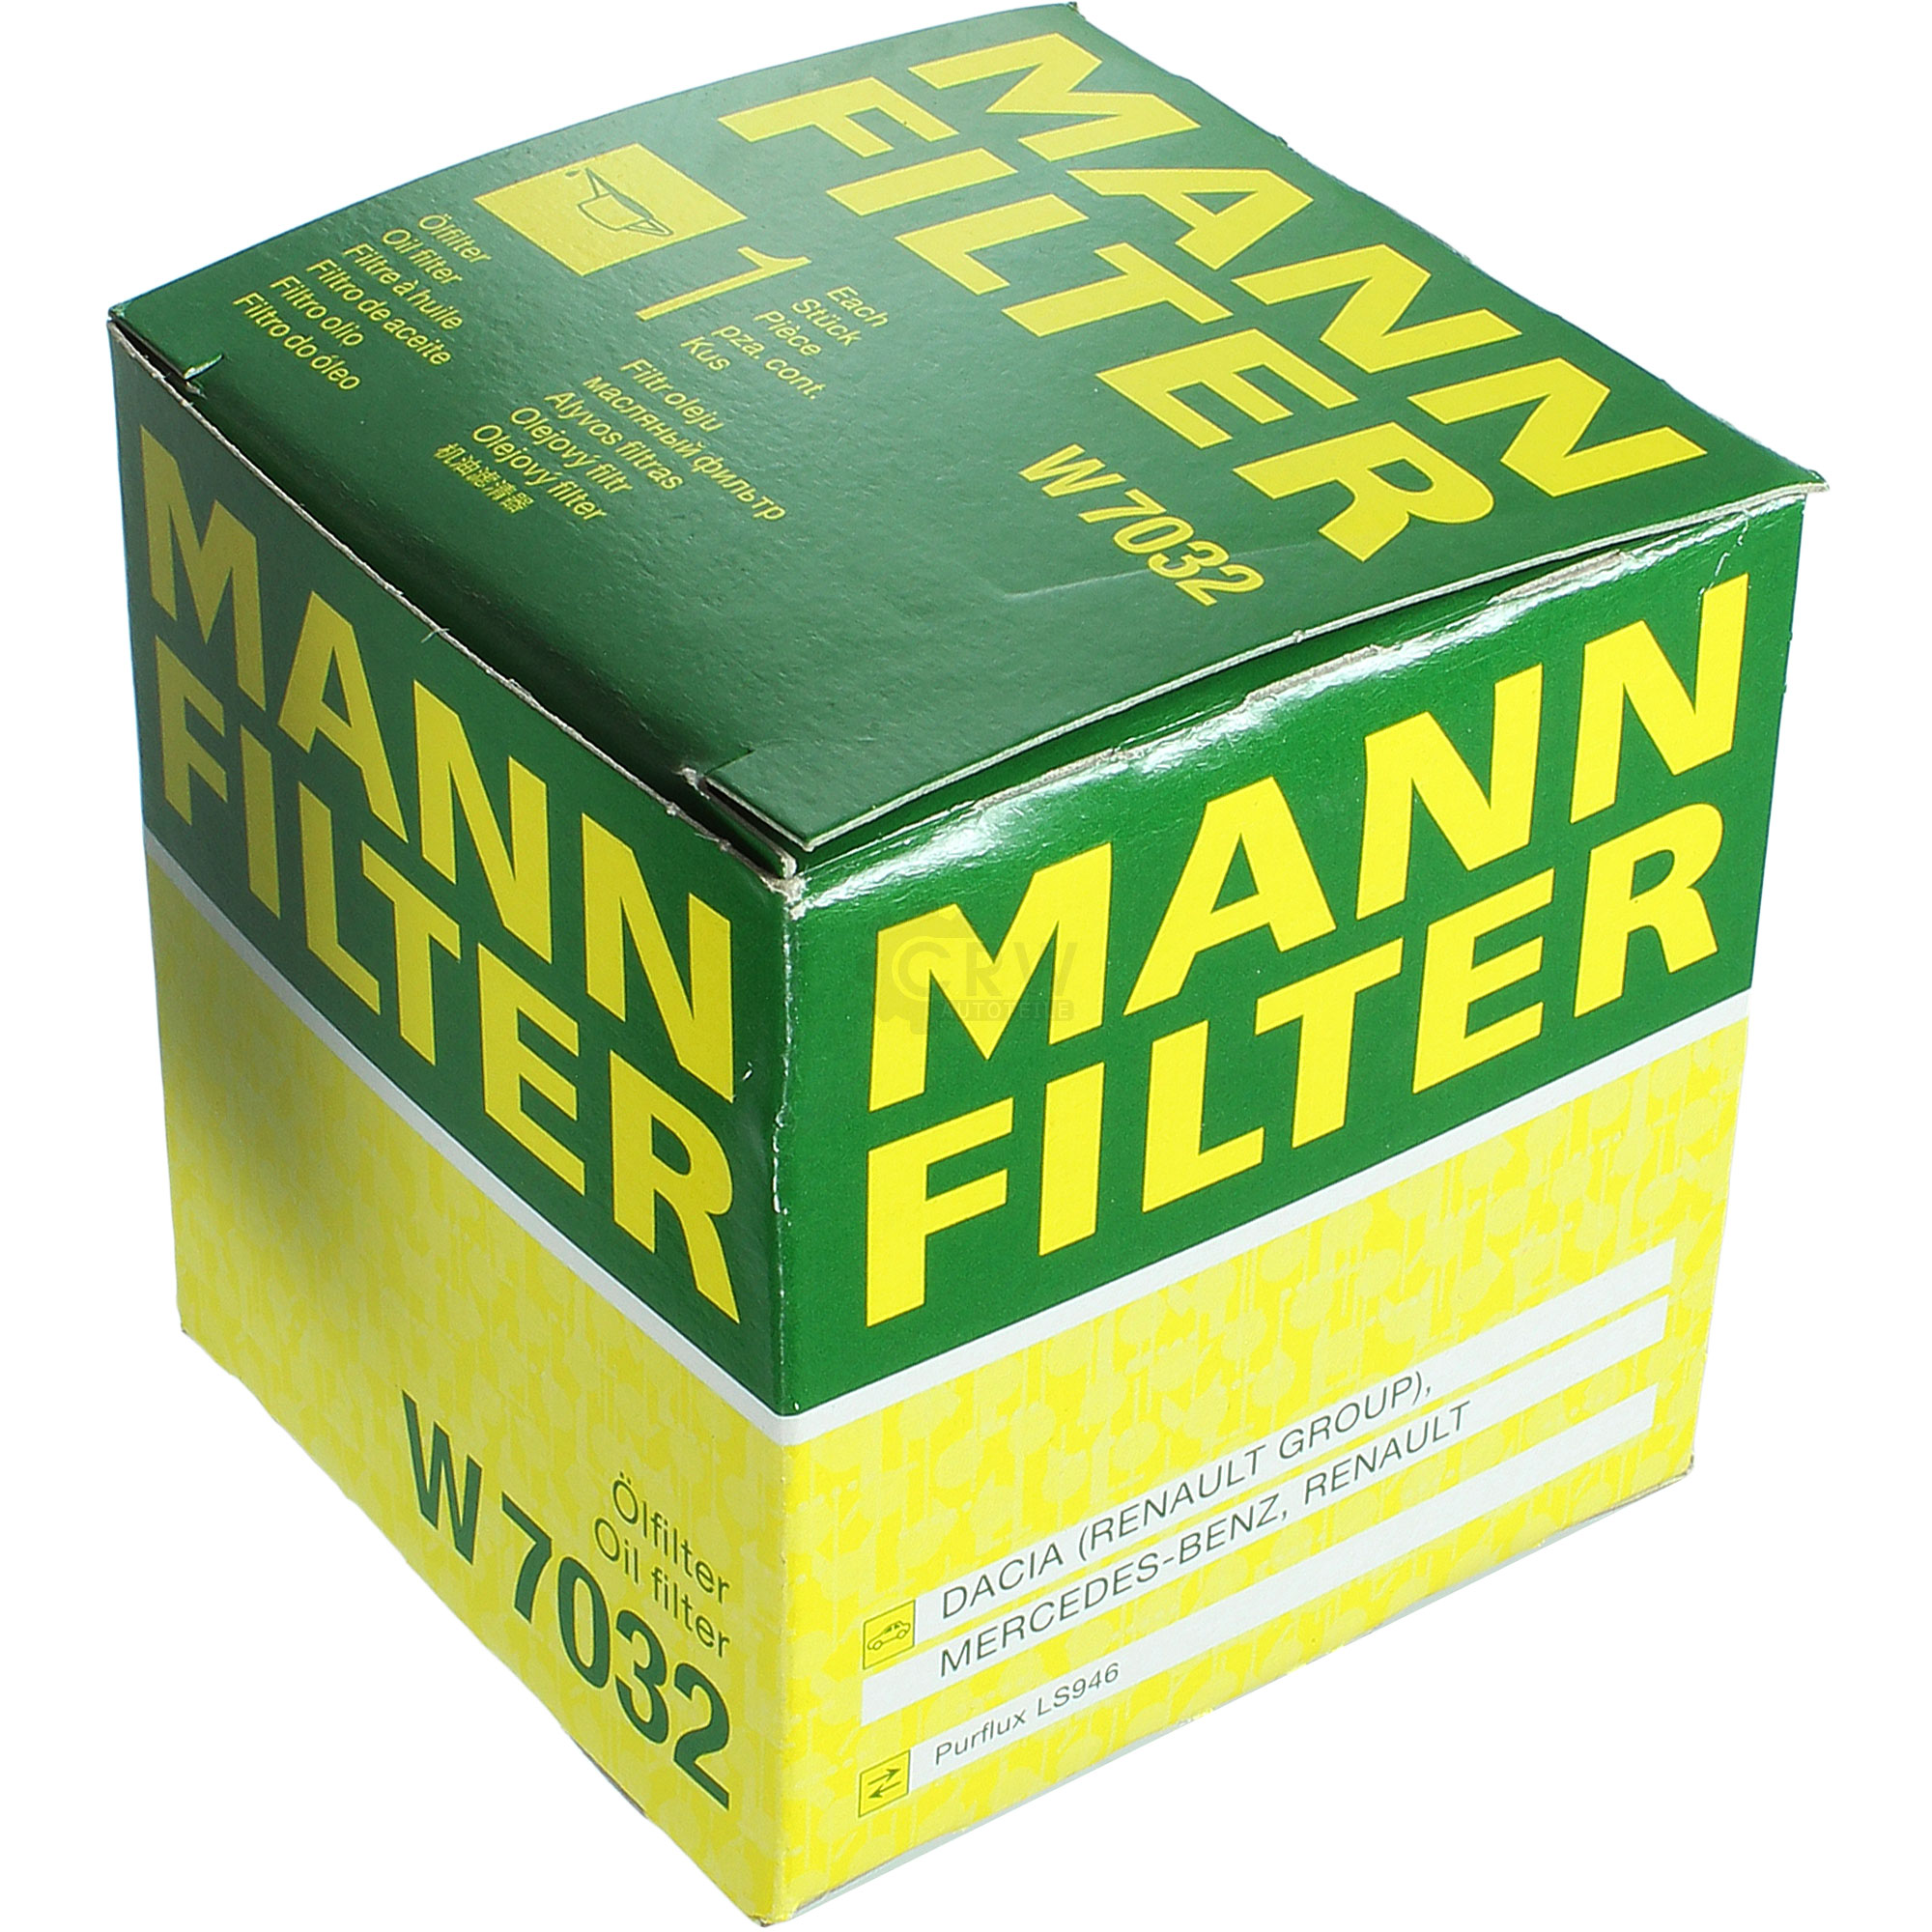 MANN-FILTER Ölfilter W 7032 Oil Filter